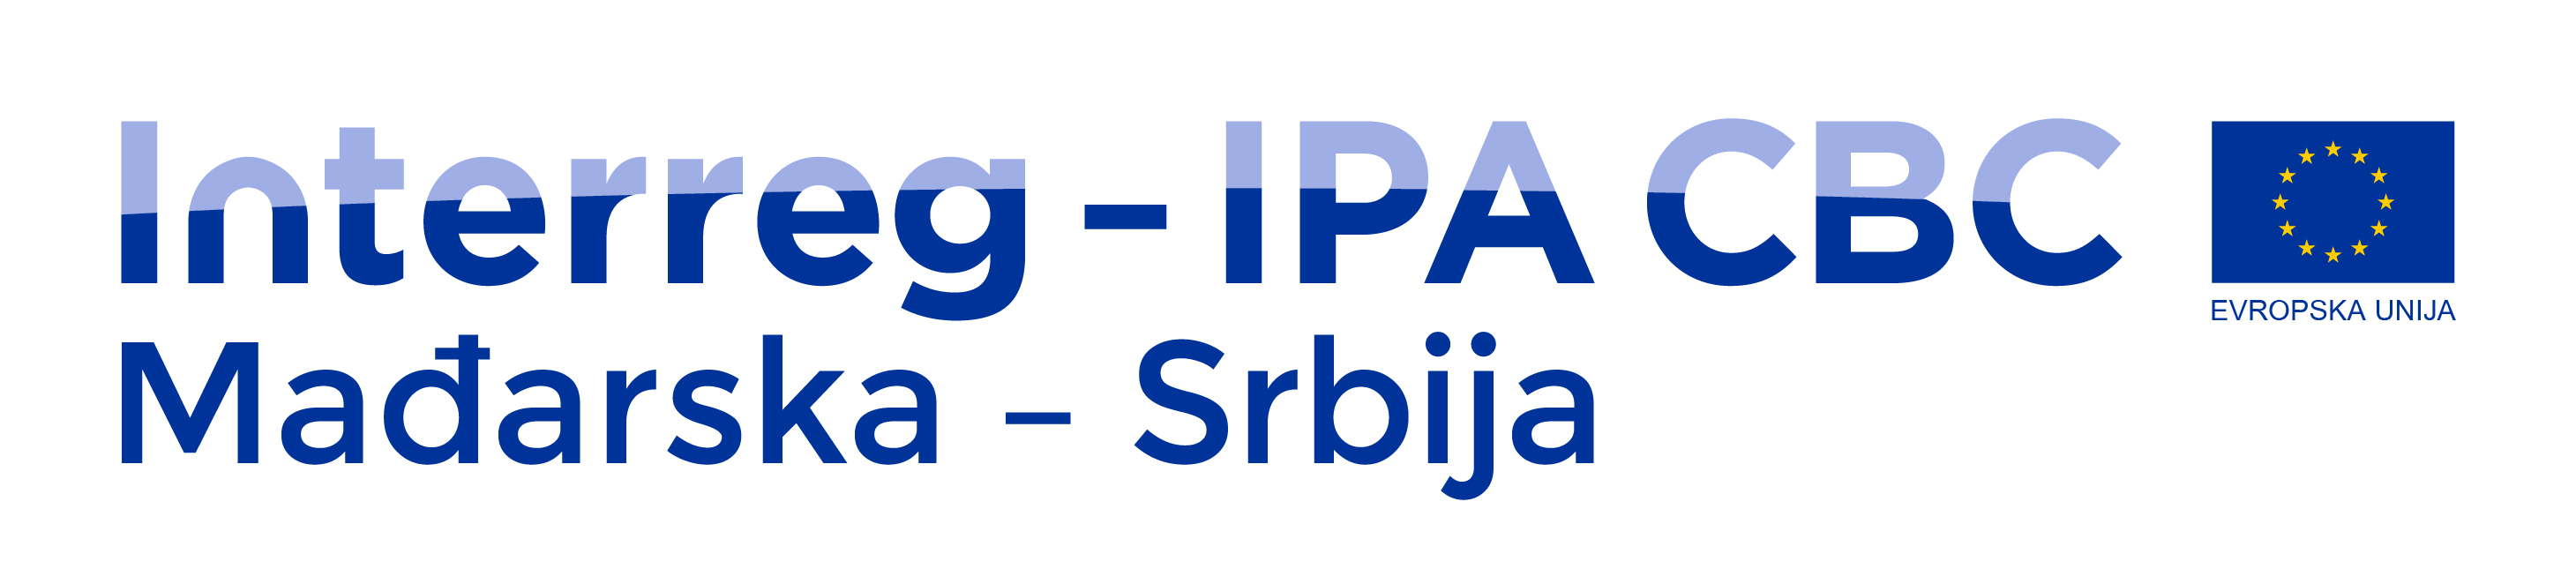 Interreg - IPA CBC Mađarska - Srbija